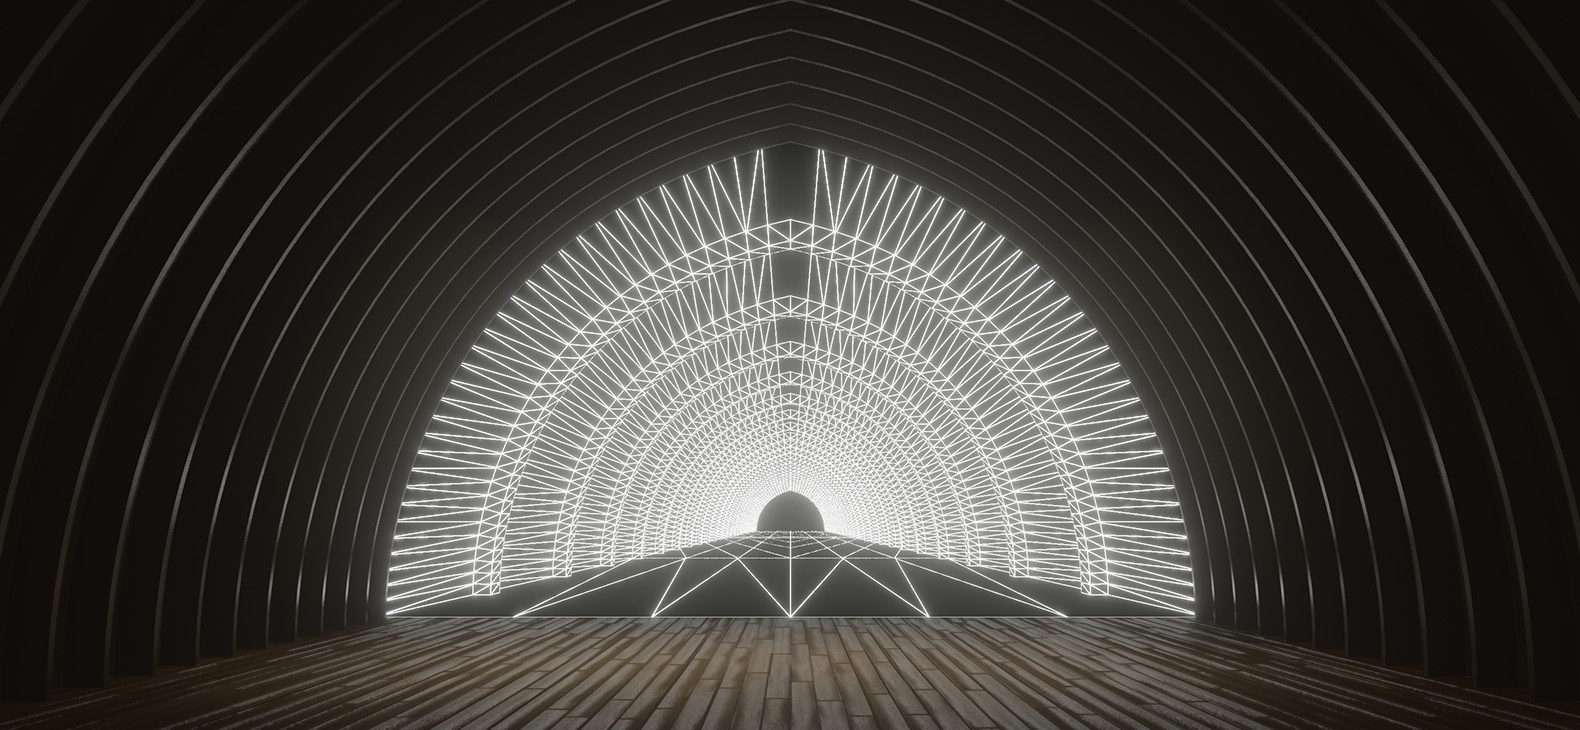 Simulation zur Ausstellung "Another Place" von Pavel Mrkus im Schafhof - Europäisches Künstlerhaus Oberbayern; eine komplexe weiße Linienstruktur füllt die Stirnwand des Tonnenweölbes im Schafhof, ausgehend vom Fluchtpunkt der Zentralperspektive